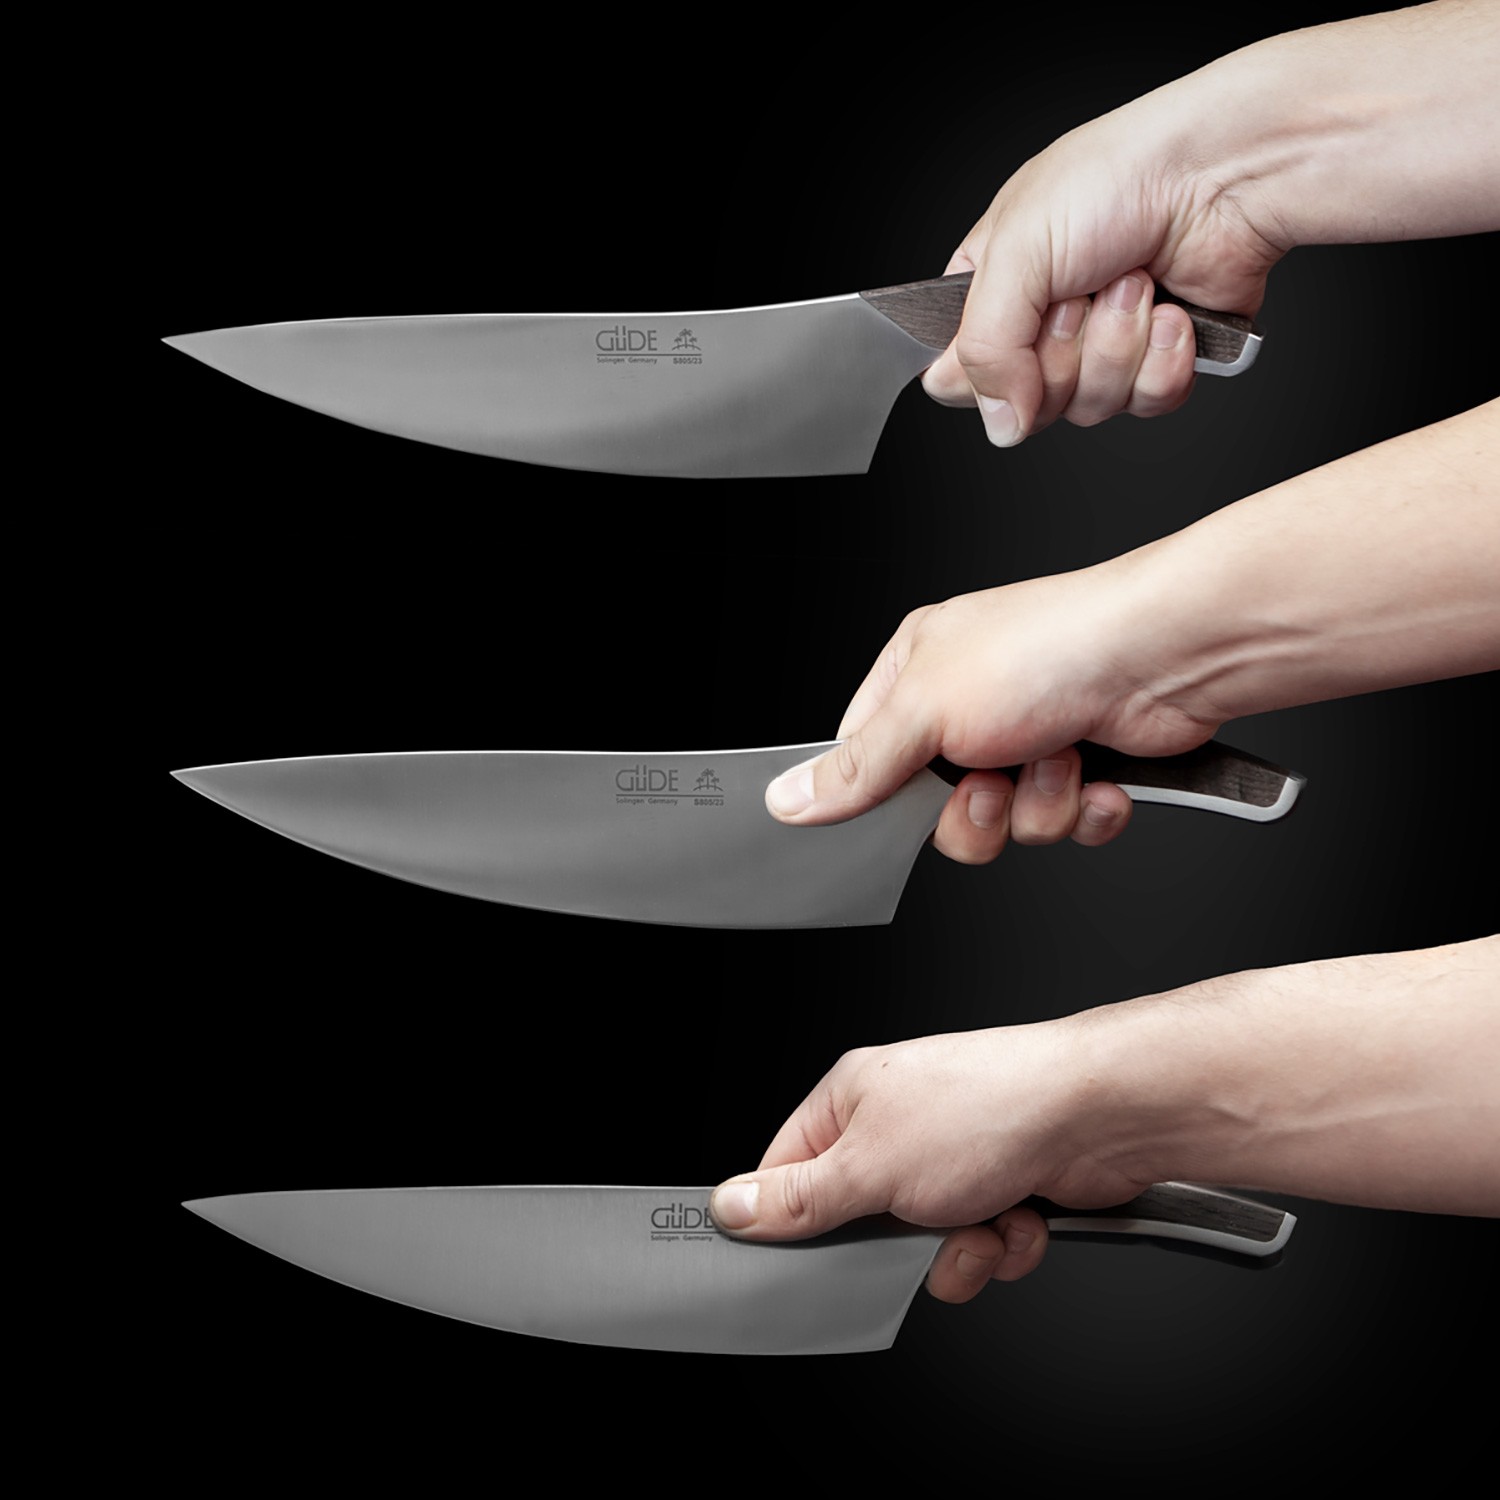 Messer Güde Synchros Kochmesser im Test, Bild 3